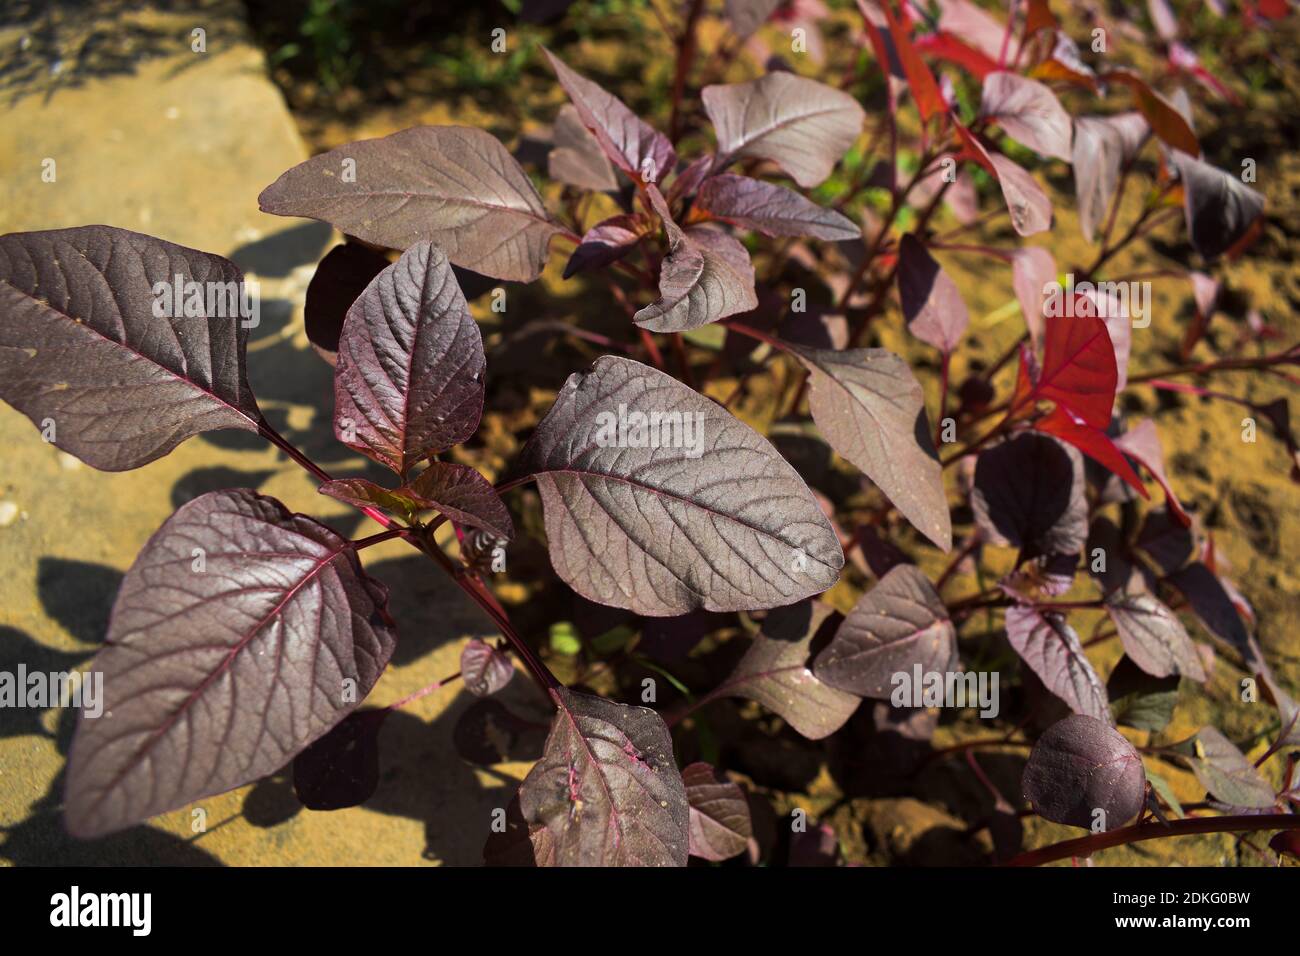 Maranthe rouge légume feuillu à l'ombre de rouge rose et pourpre. Pleine culture ainsi que des feuilles de youf tendre cuisine jardinage récolte croissante. Sélectif f Banque D'Images